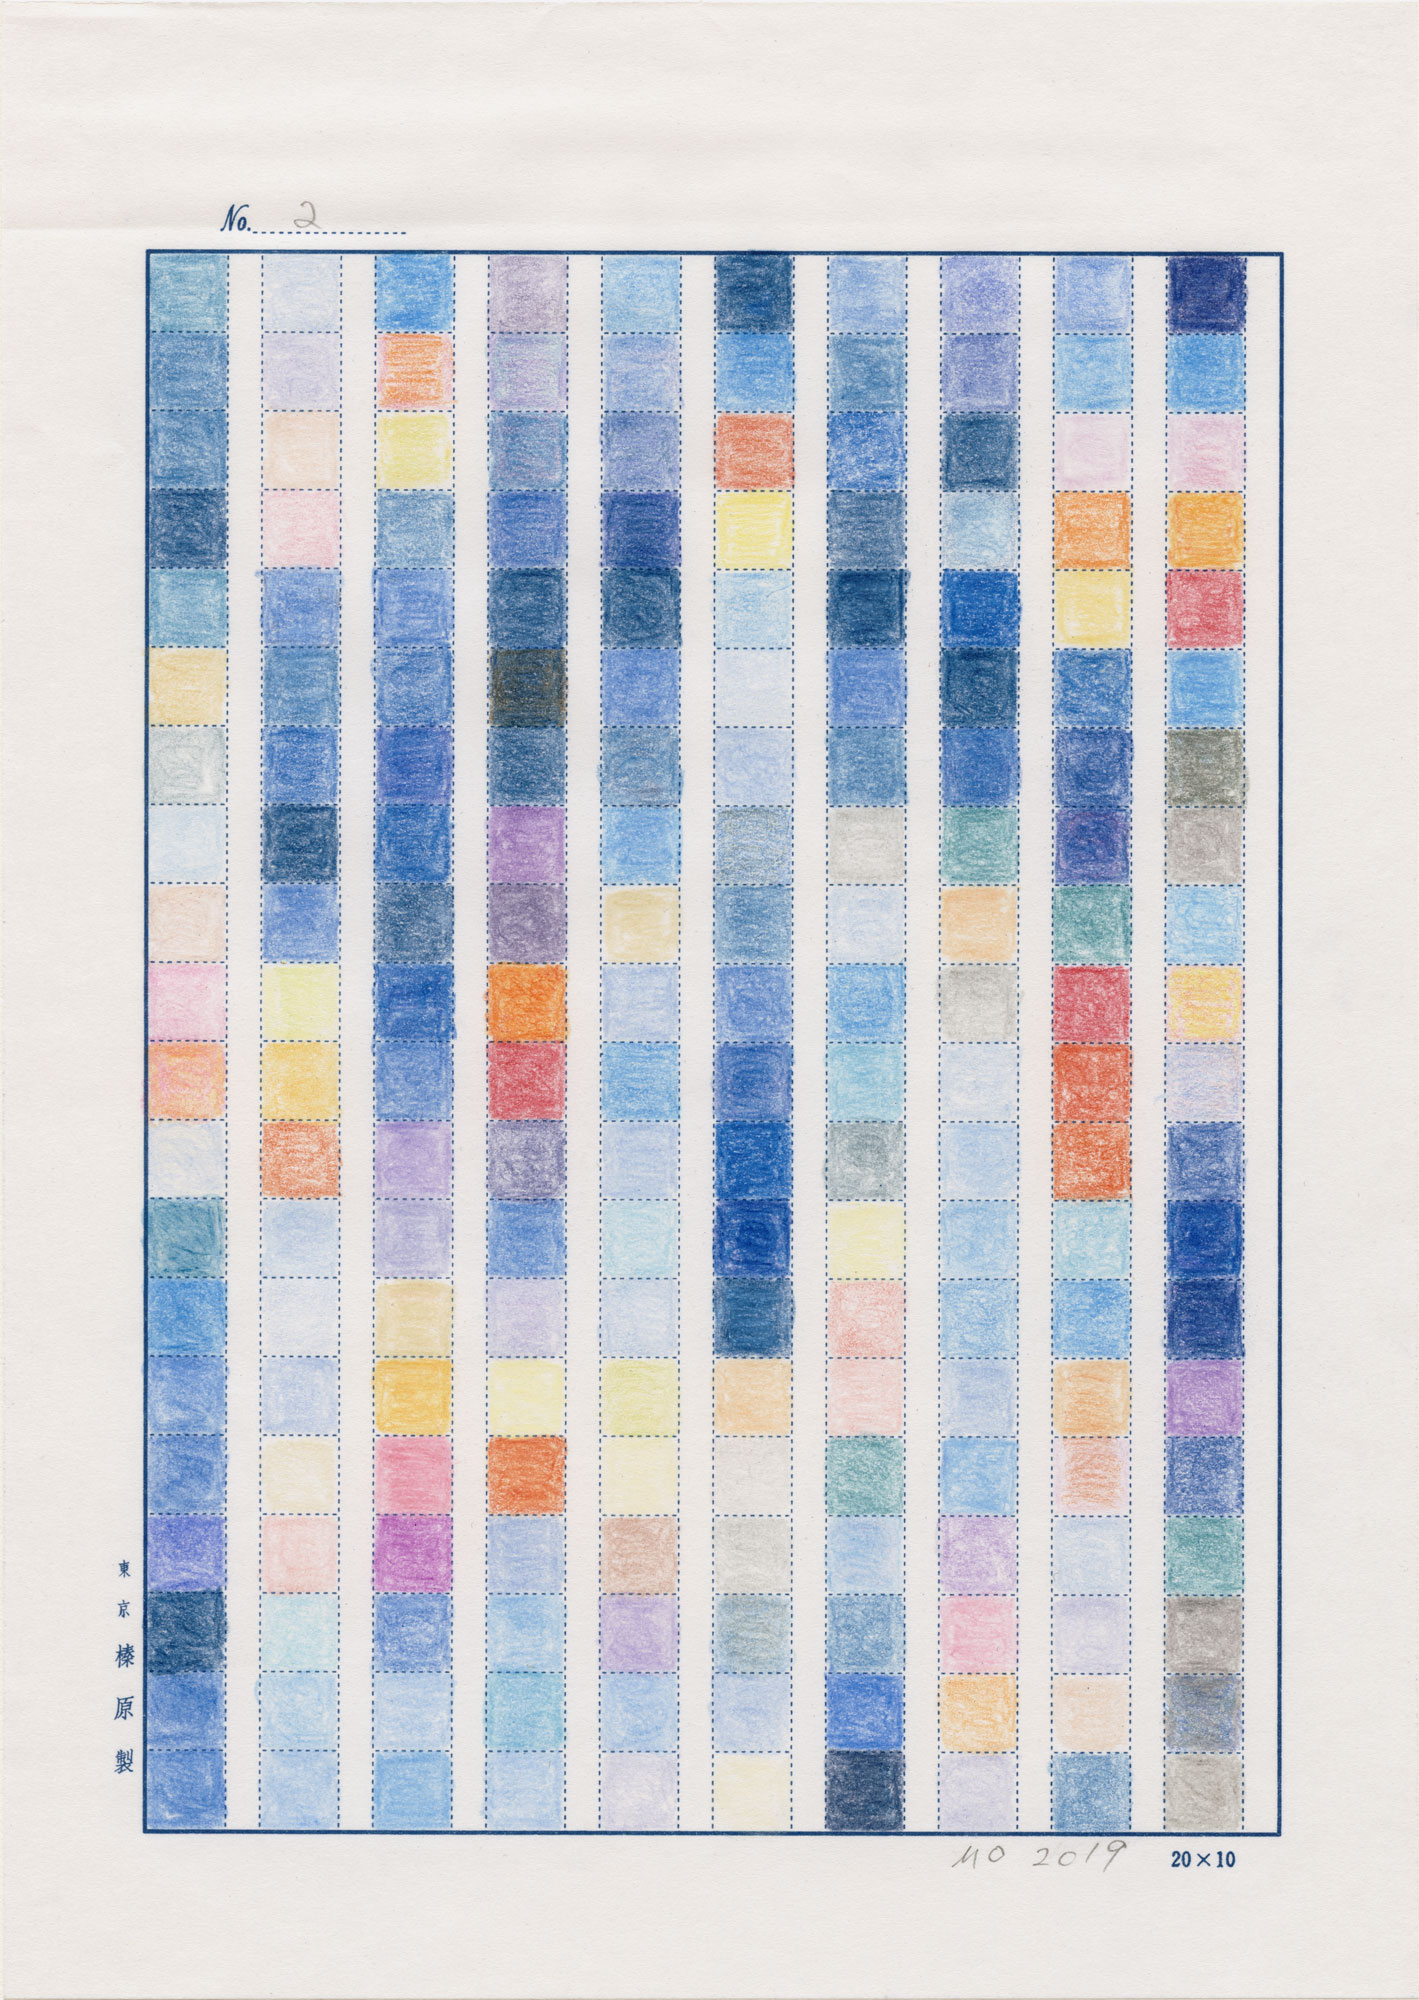    日日是好日   (No.2, 1983-2019, an ongoing project), color pencil on manuscript paper and international mail, 9-49/64” x 6-15/16” (24.8 cm x 17.6 cm), sent to Taito-ku, Tokyo, JAPAN from New York NY, USA 